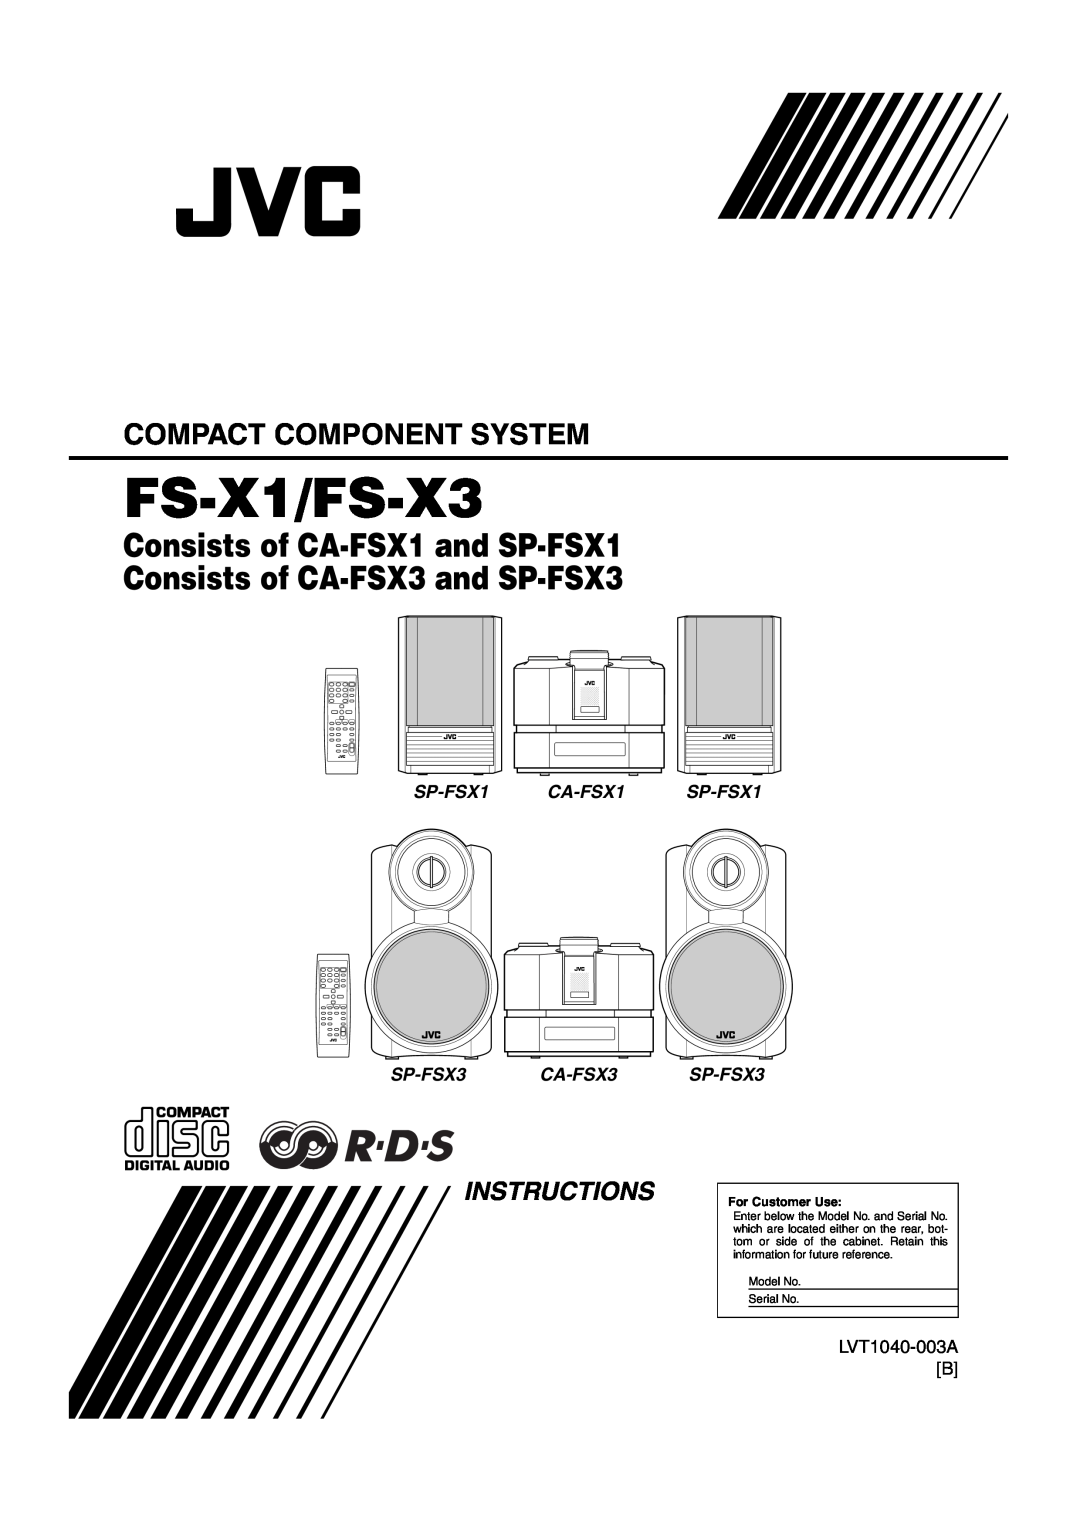 JVC LVT1040-003A manual FS-X1/FS-X3, Consists of CA-FSX1and SP-FSX1, Consists of CA-FSX3and SP-FSX3, Instructions 